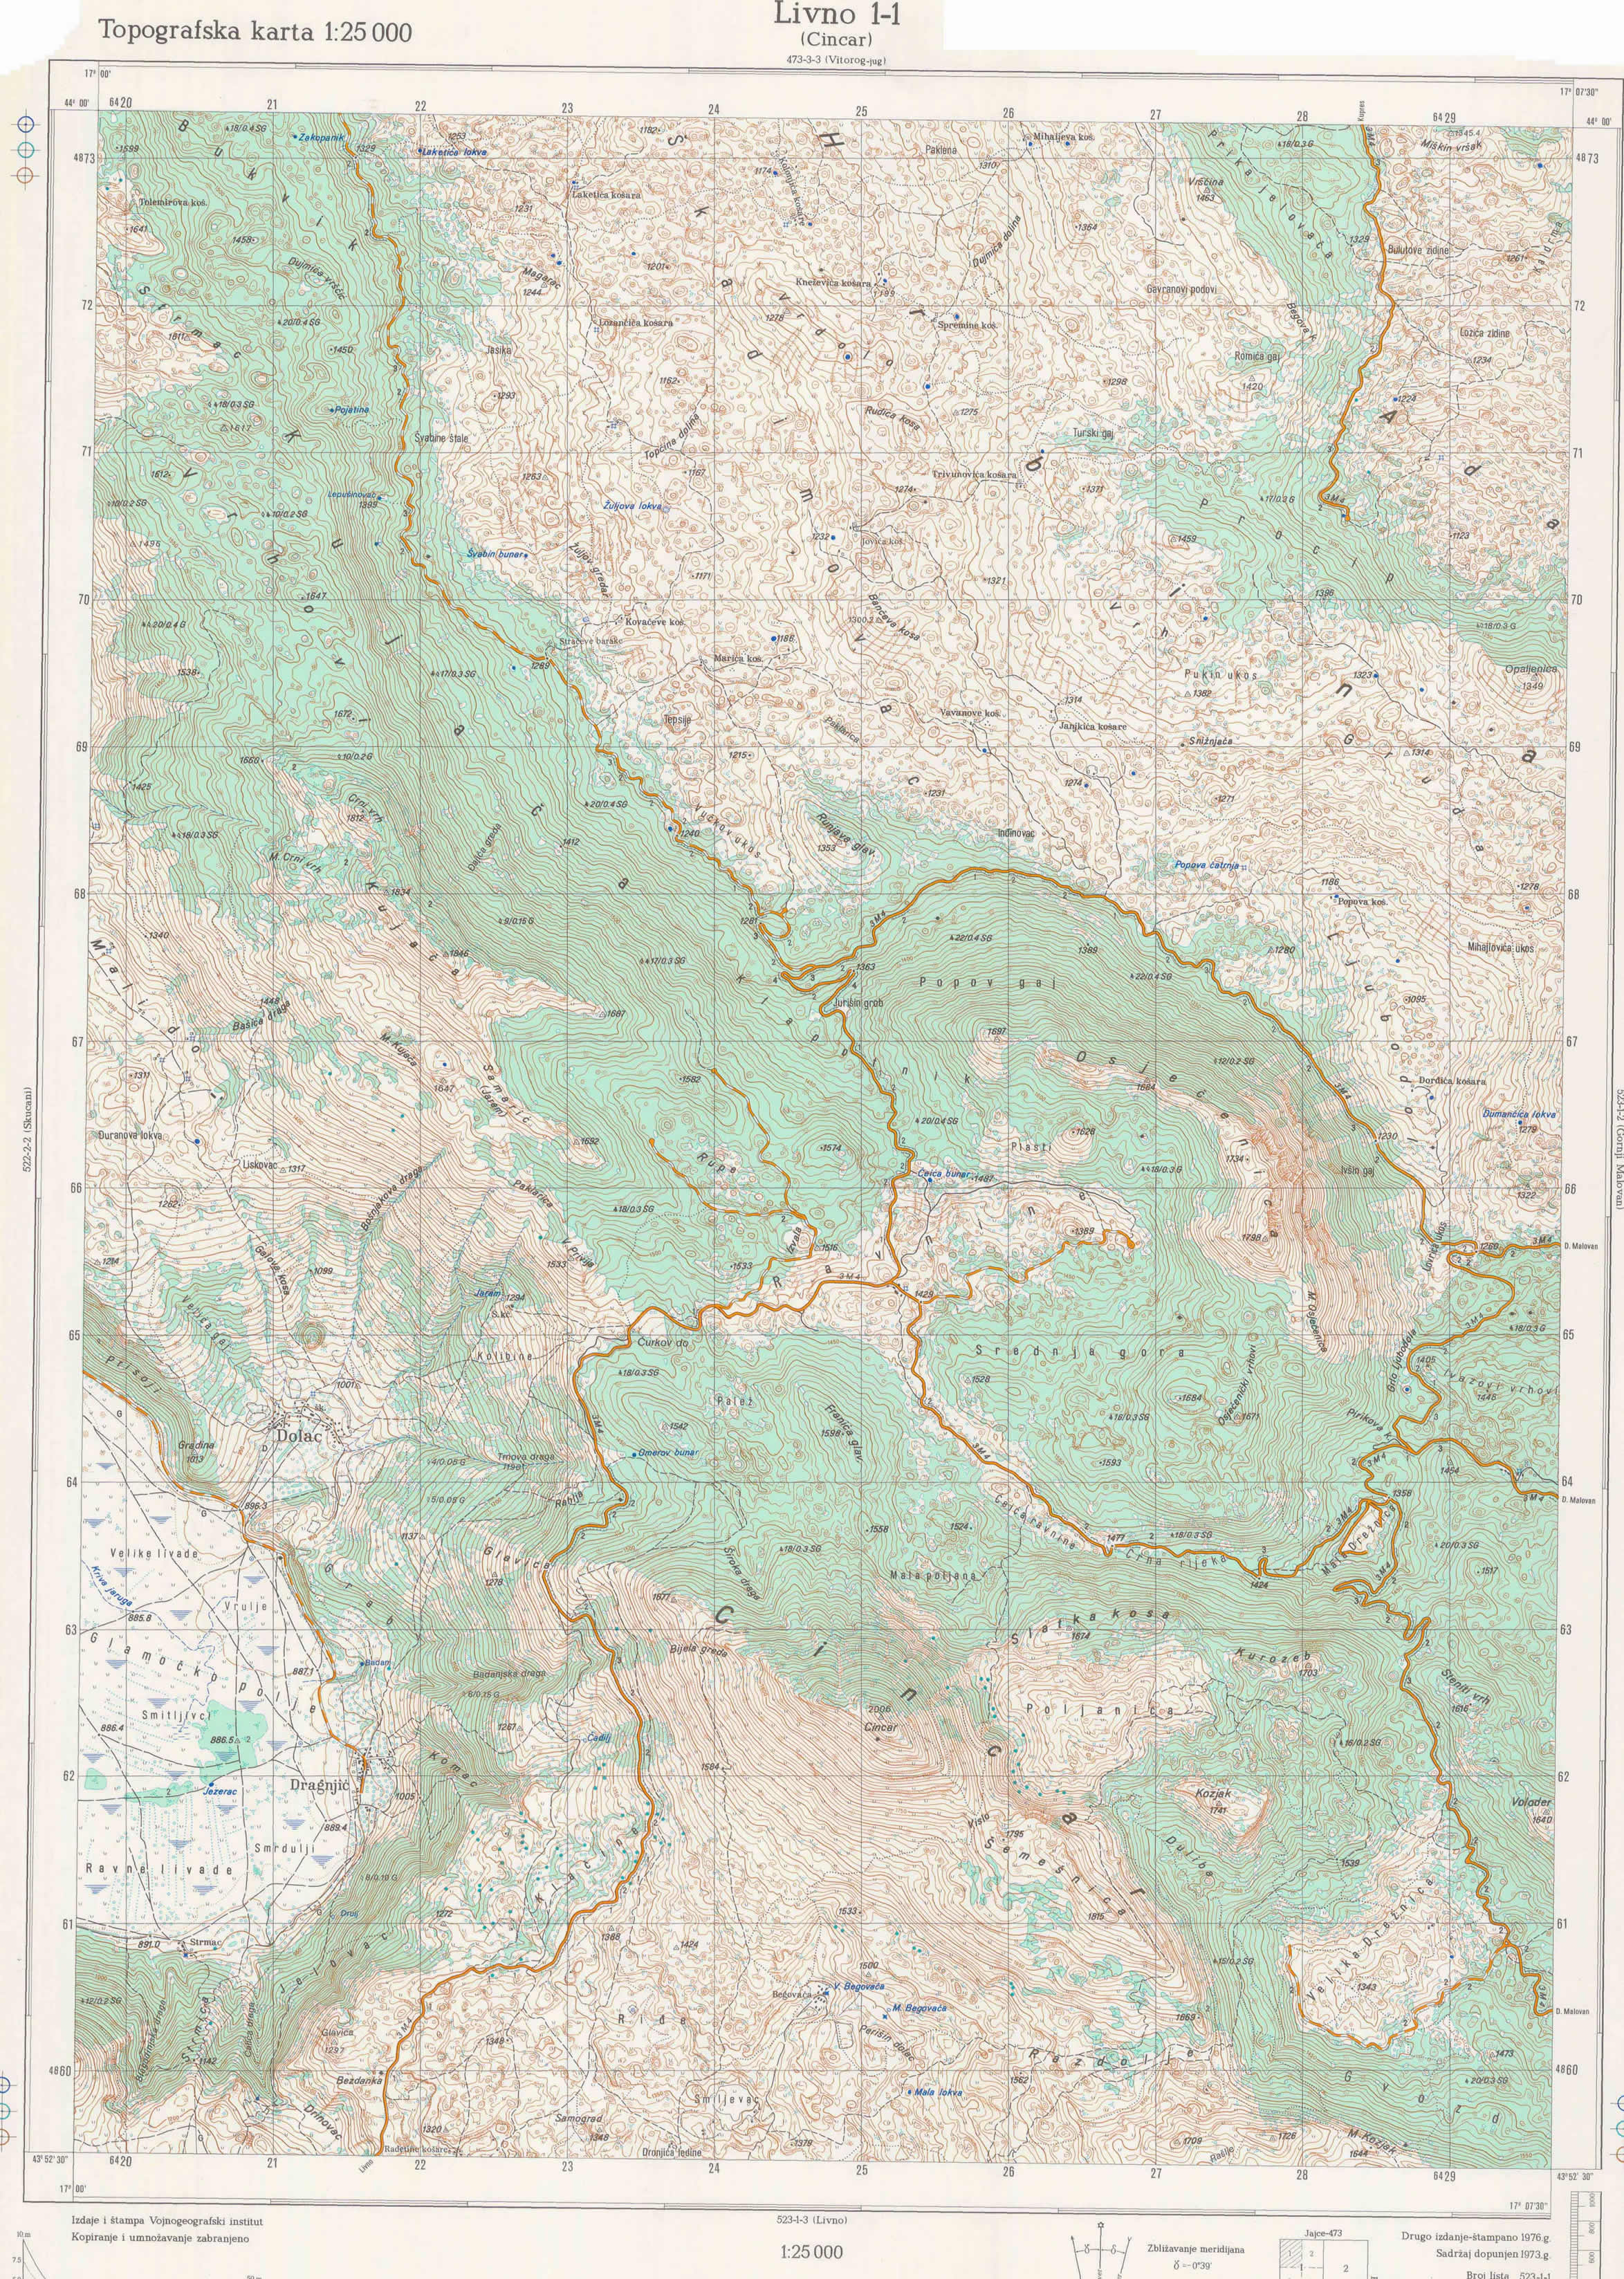  topografska karta BiH 25000 JNA  Cincar